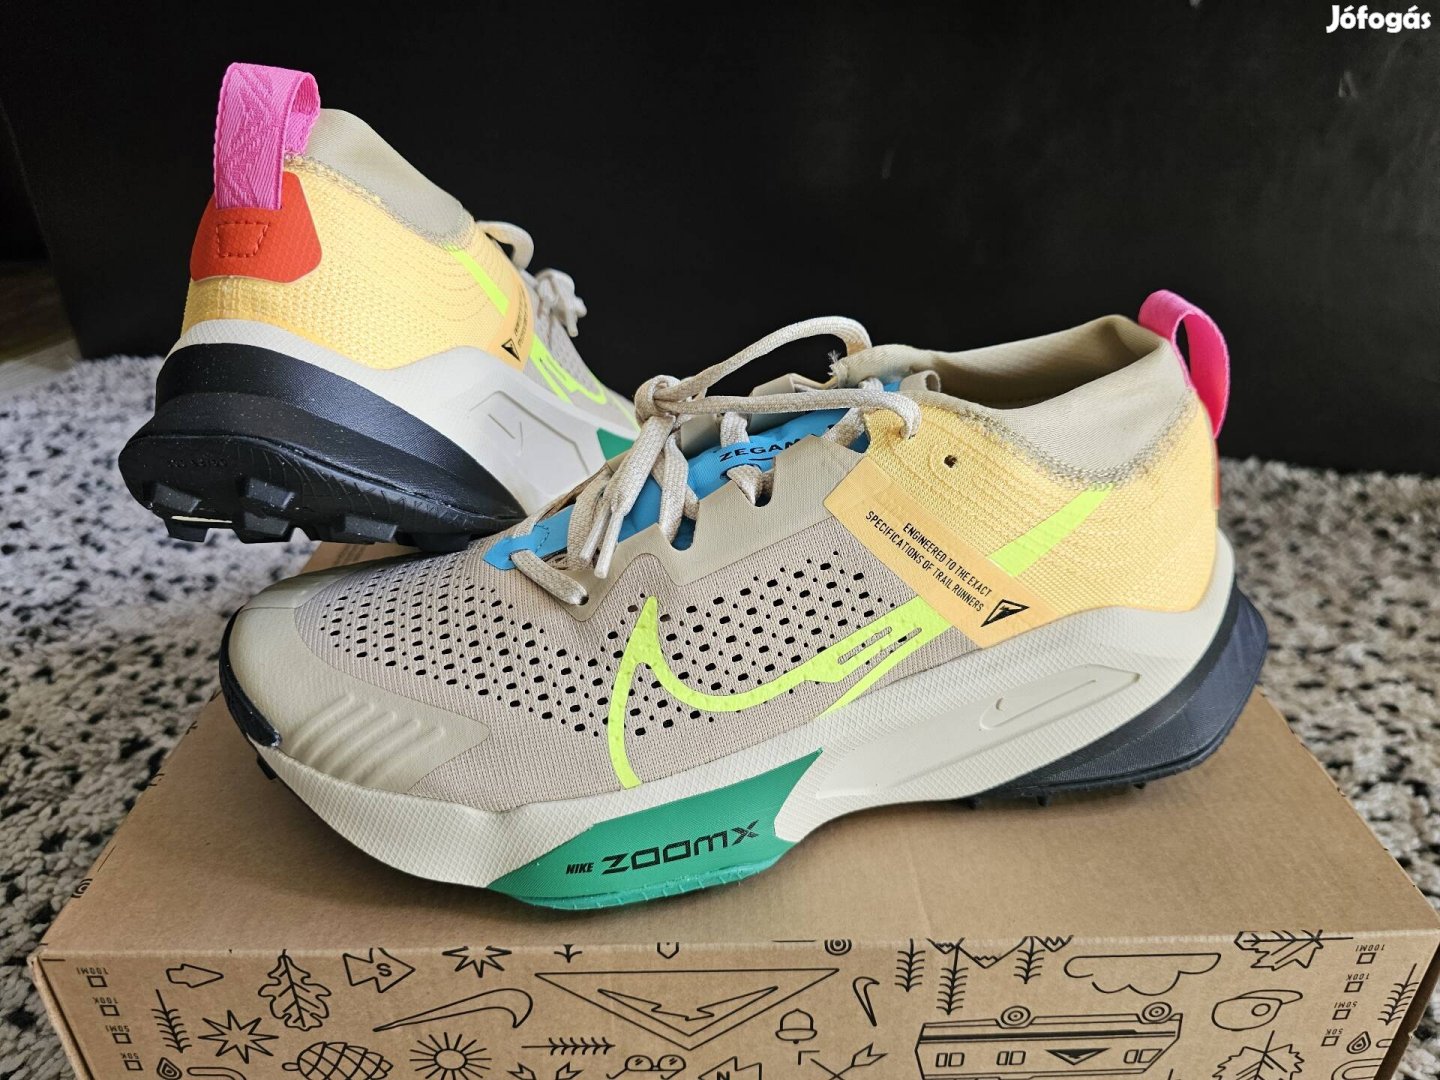 Nike Zoomx Zegama Trail 41 és 45-ös profi terep futó cipő